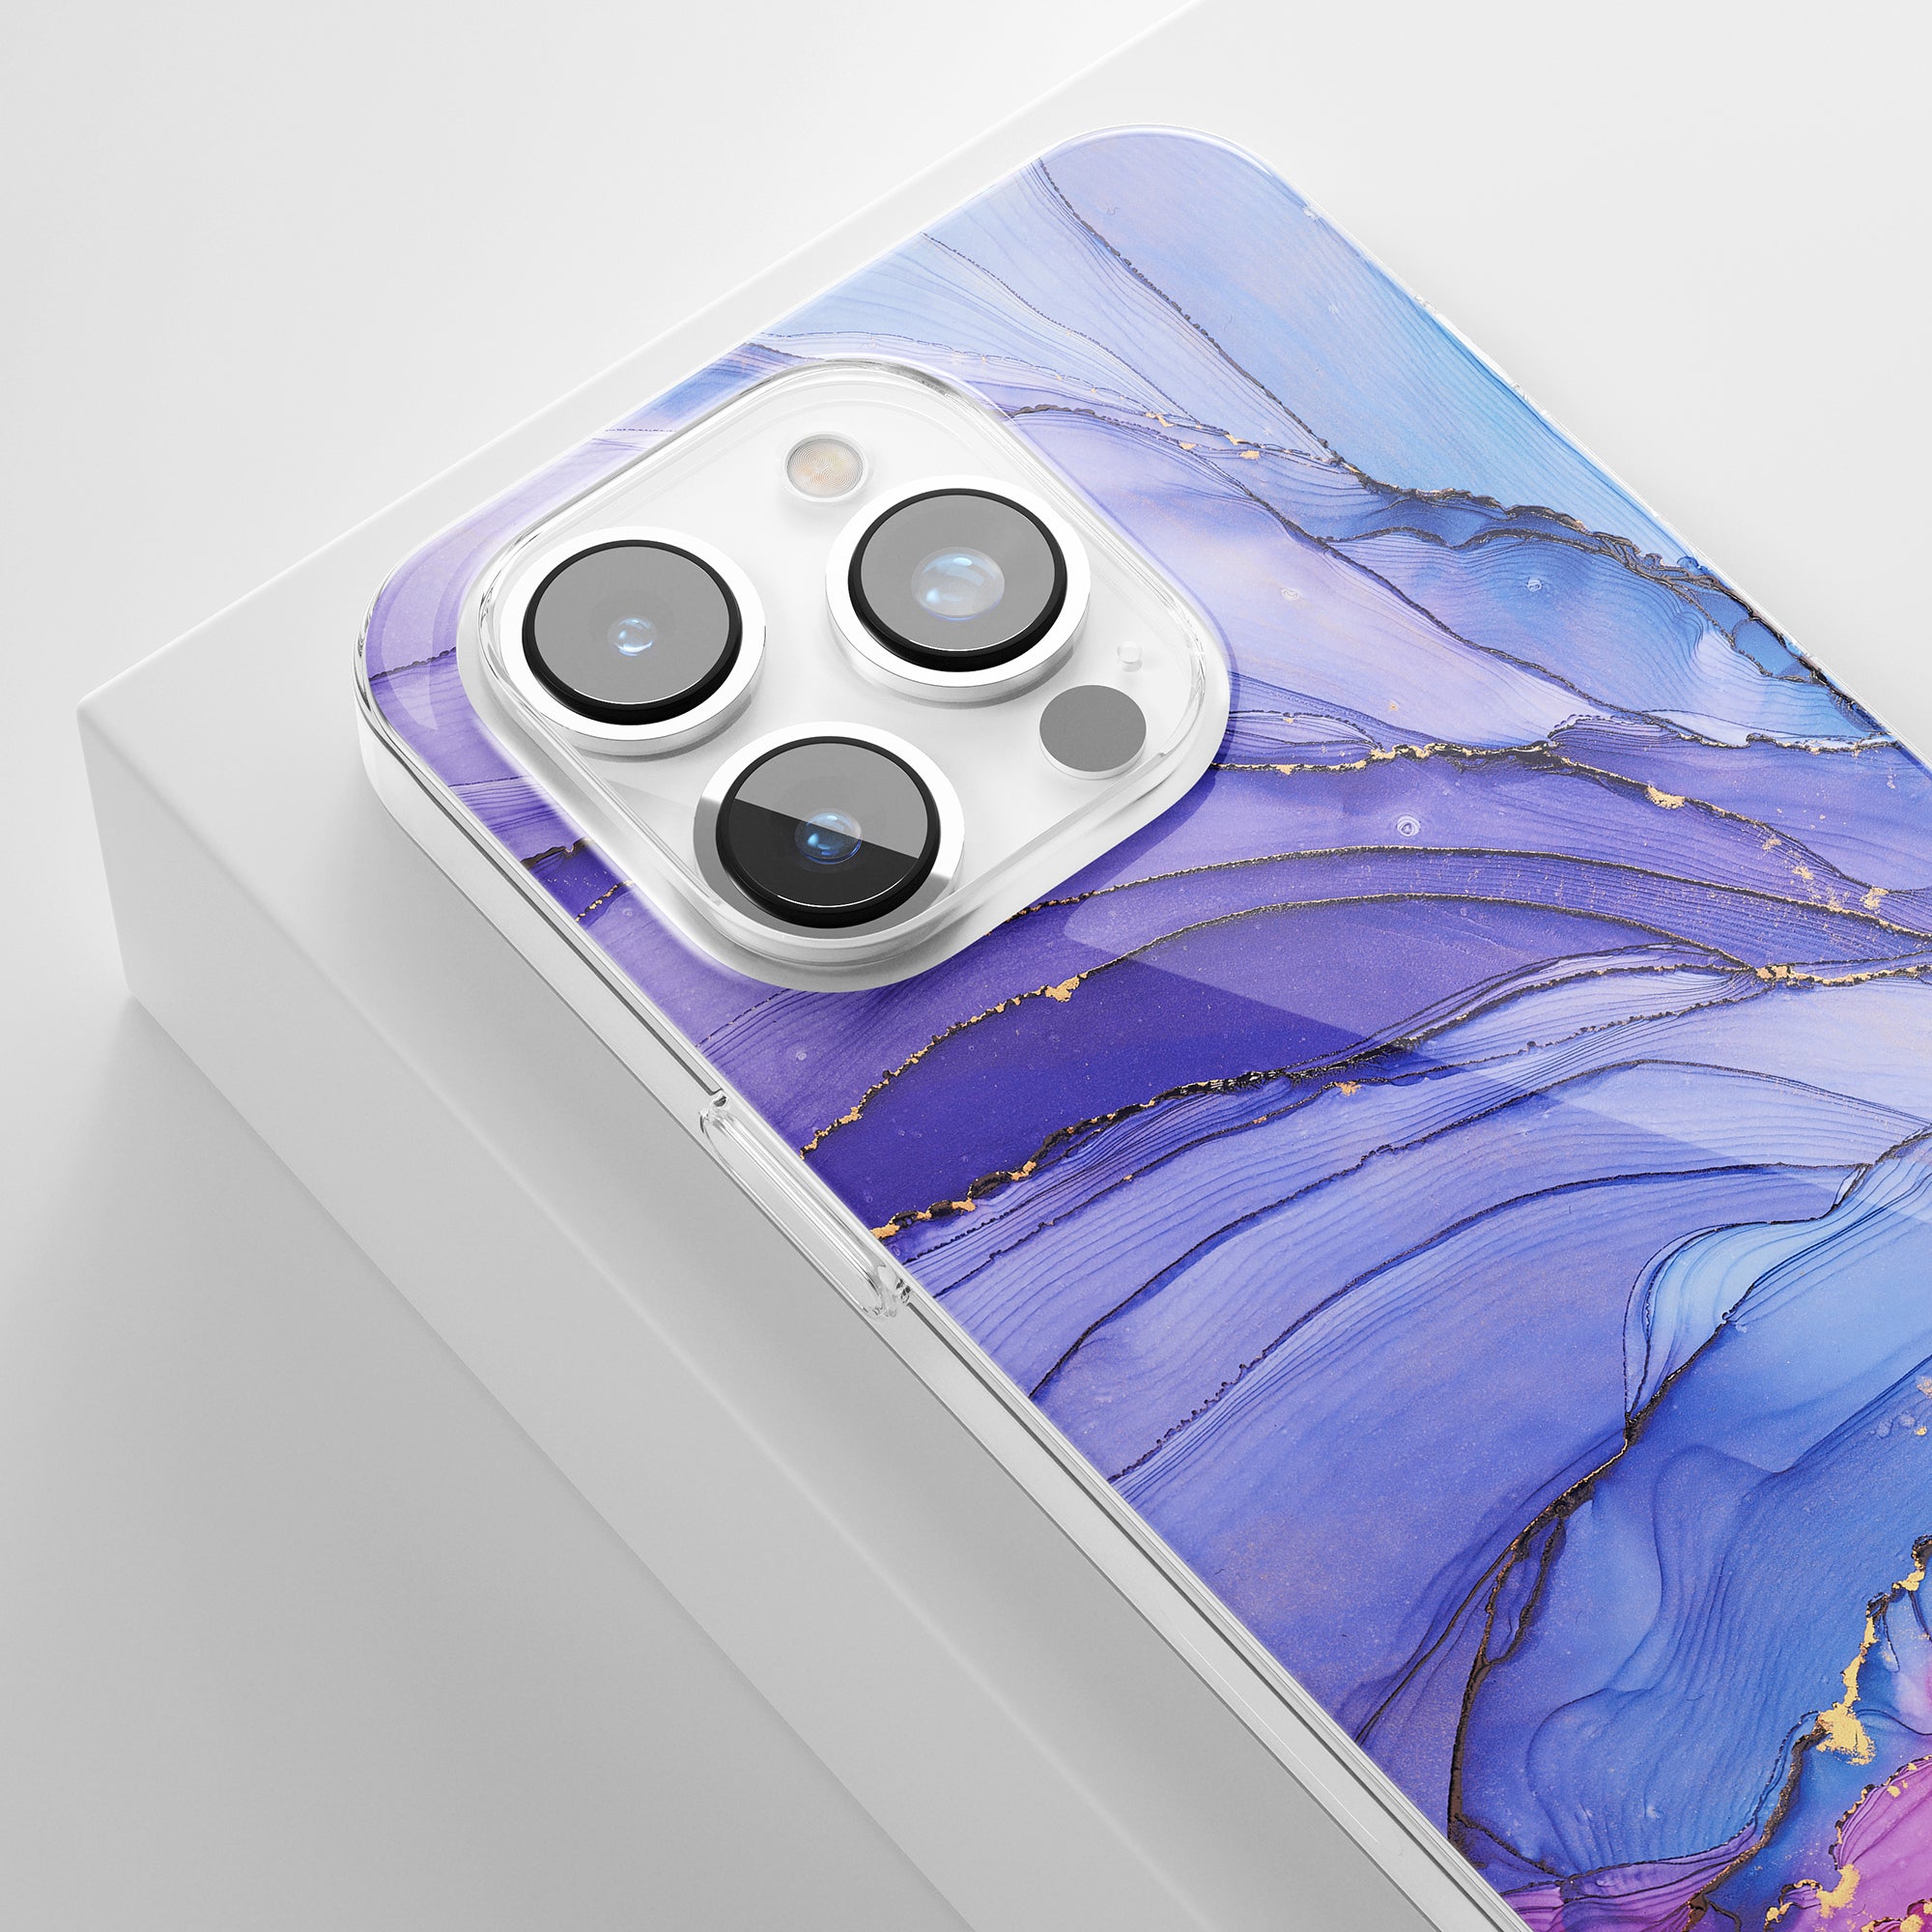 Ett drömskt - genomskinligt fodral med blå och lila marmordesign, perfekt för din iPhone.